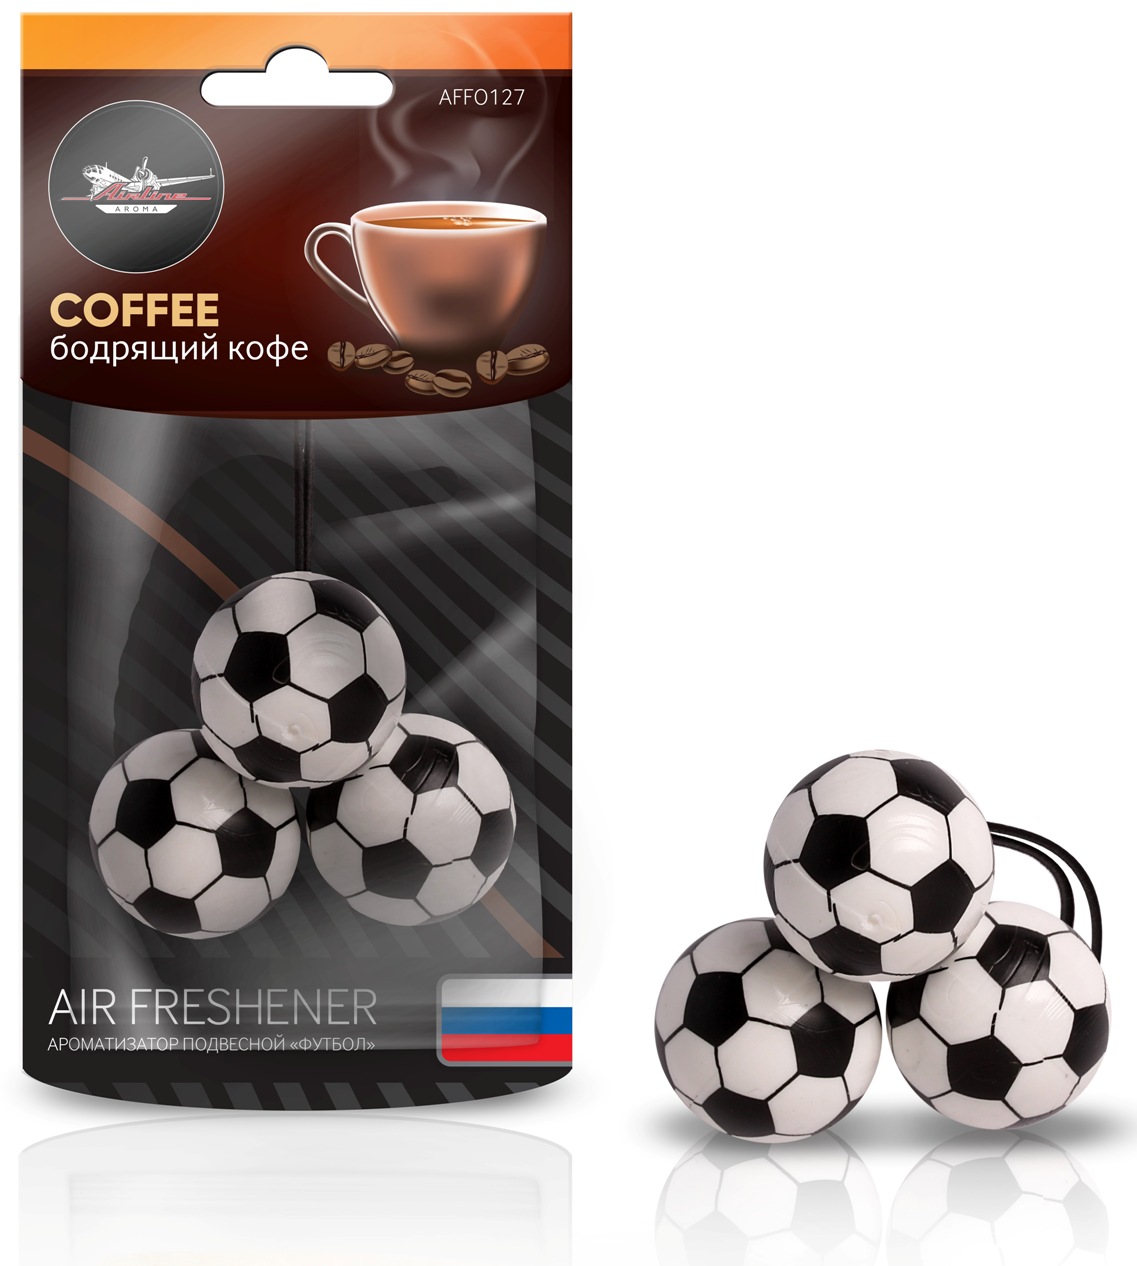 Ароматизатор подвесной "Футбол" бодрящий кофе (AFFO127)